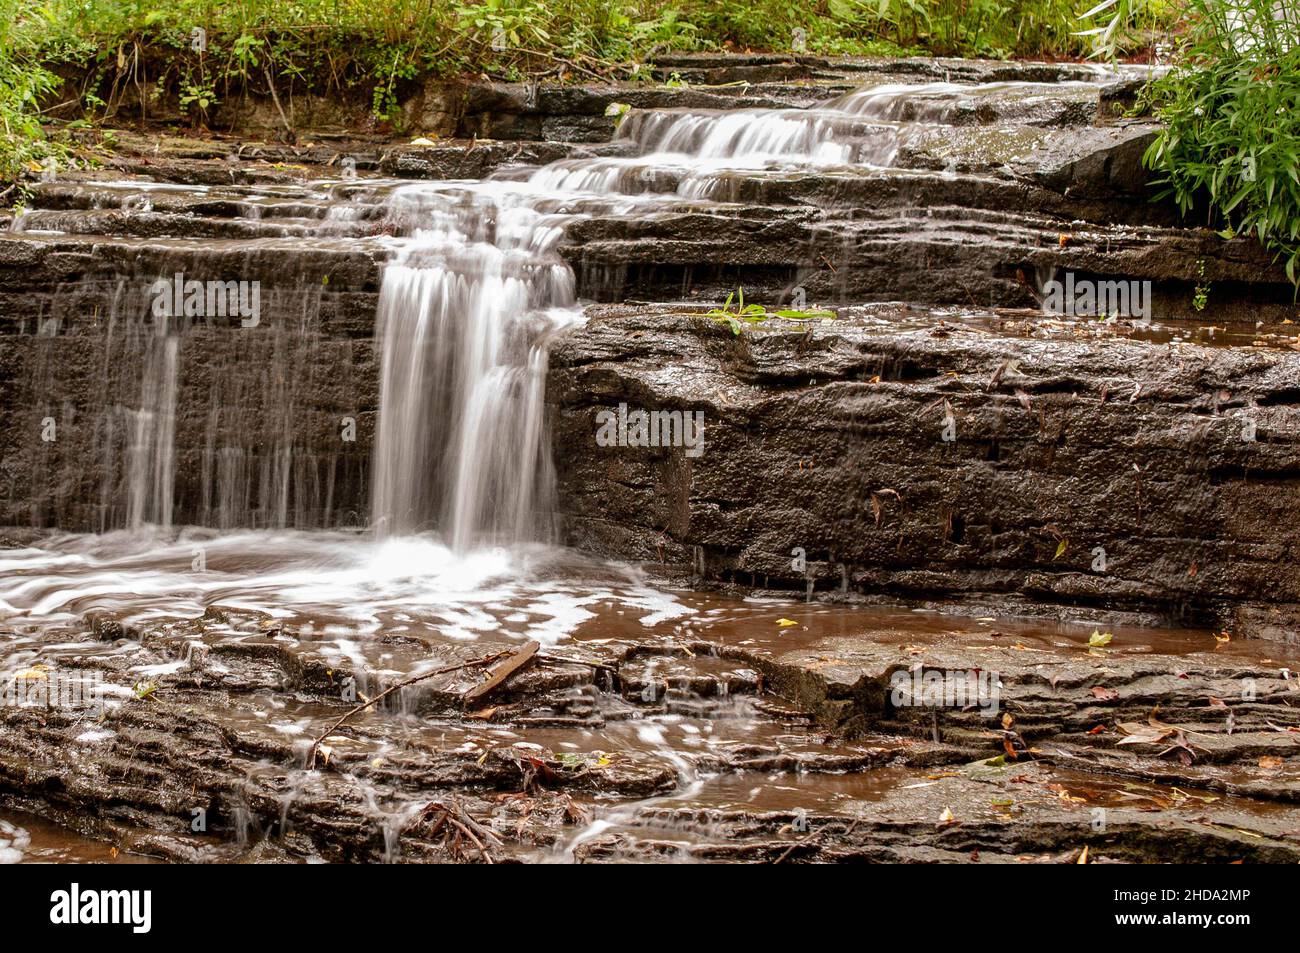 Belle vue d'une cascade coulant sur un sol rocheux dans la forêt avec frass sur les côtés Banque D'Images